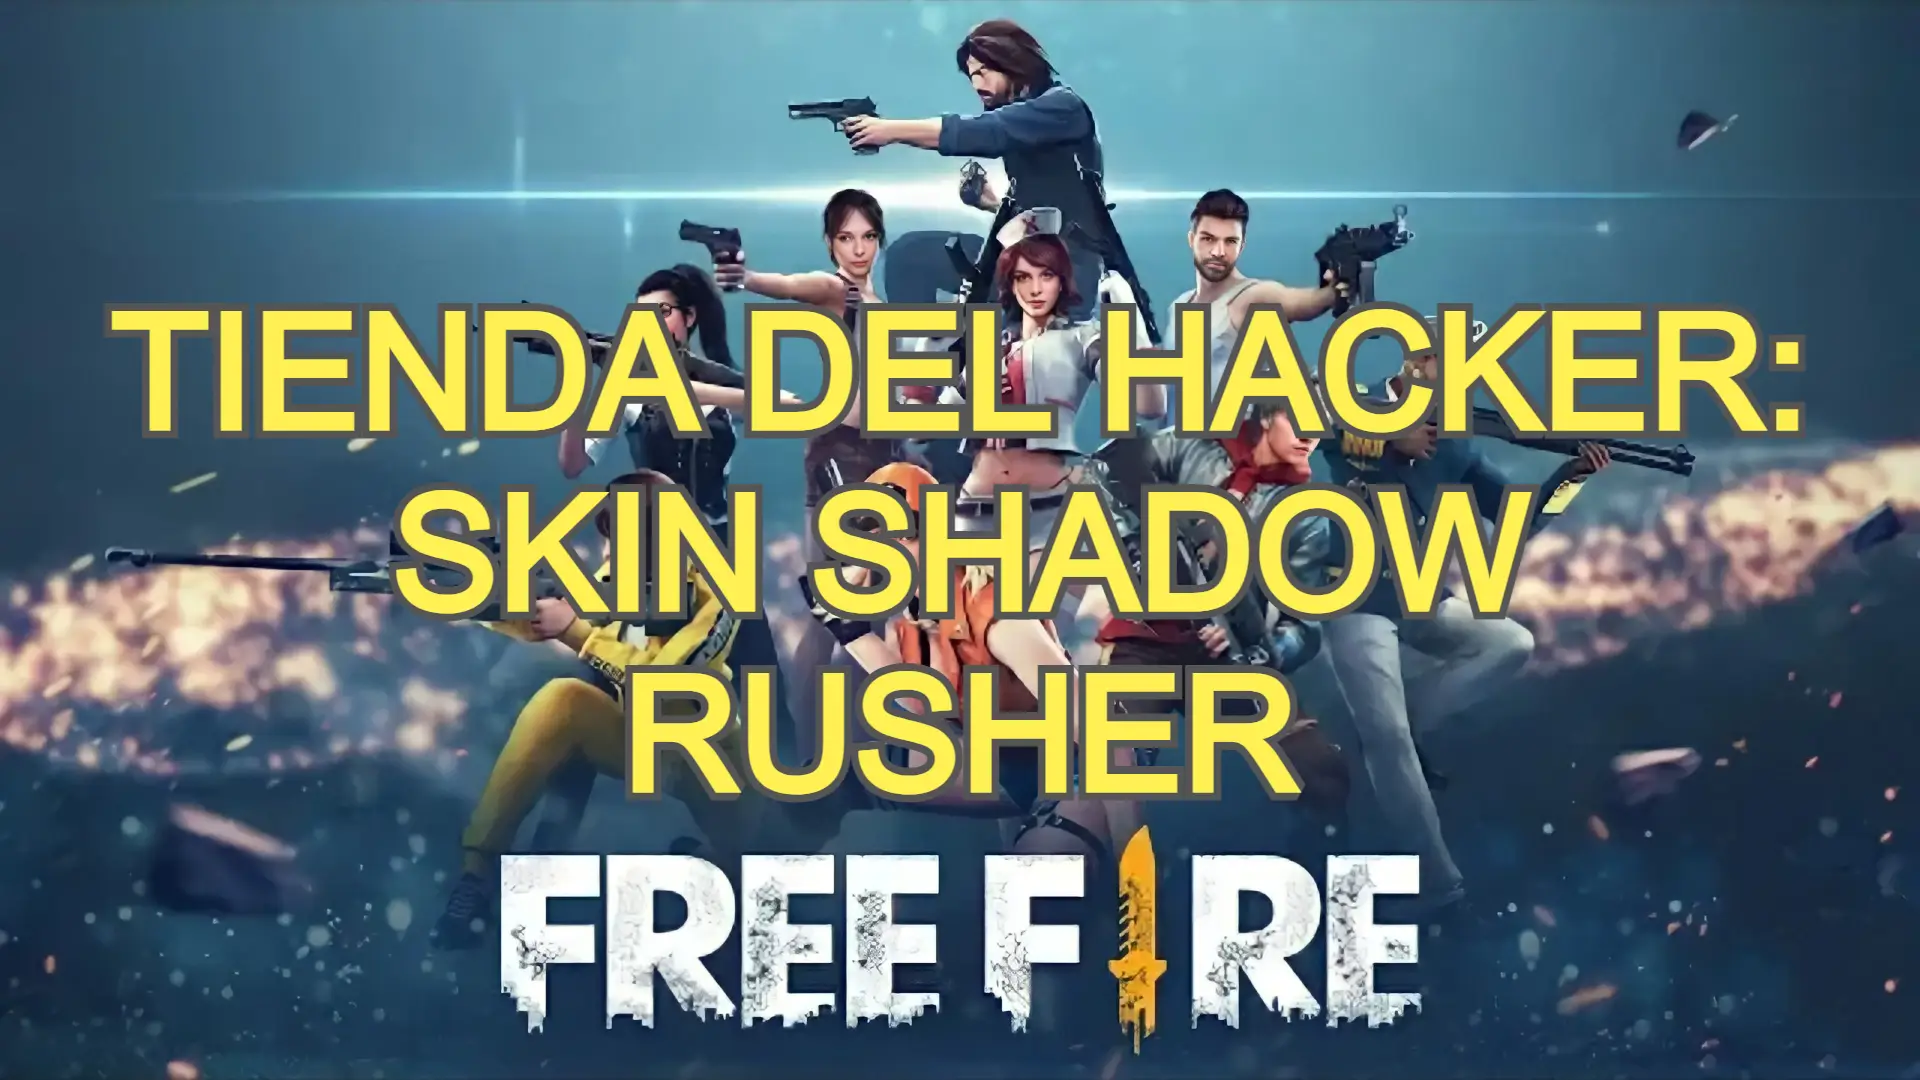 Tienda del hacker con skin Shadow Rusher